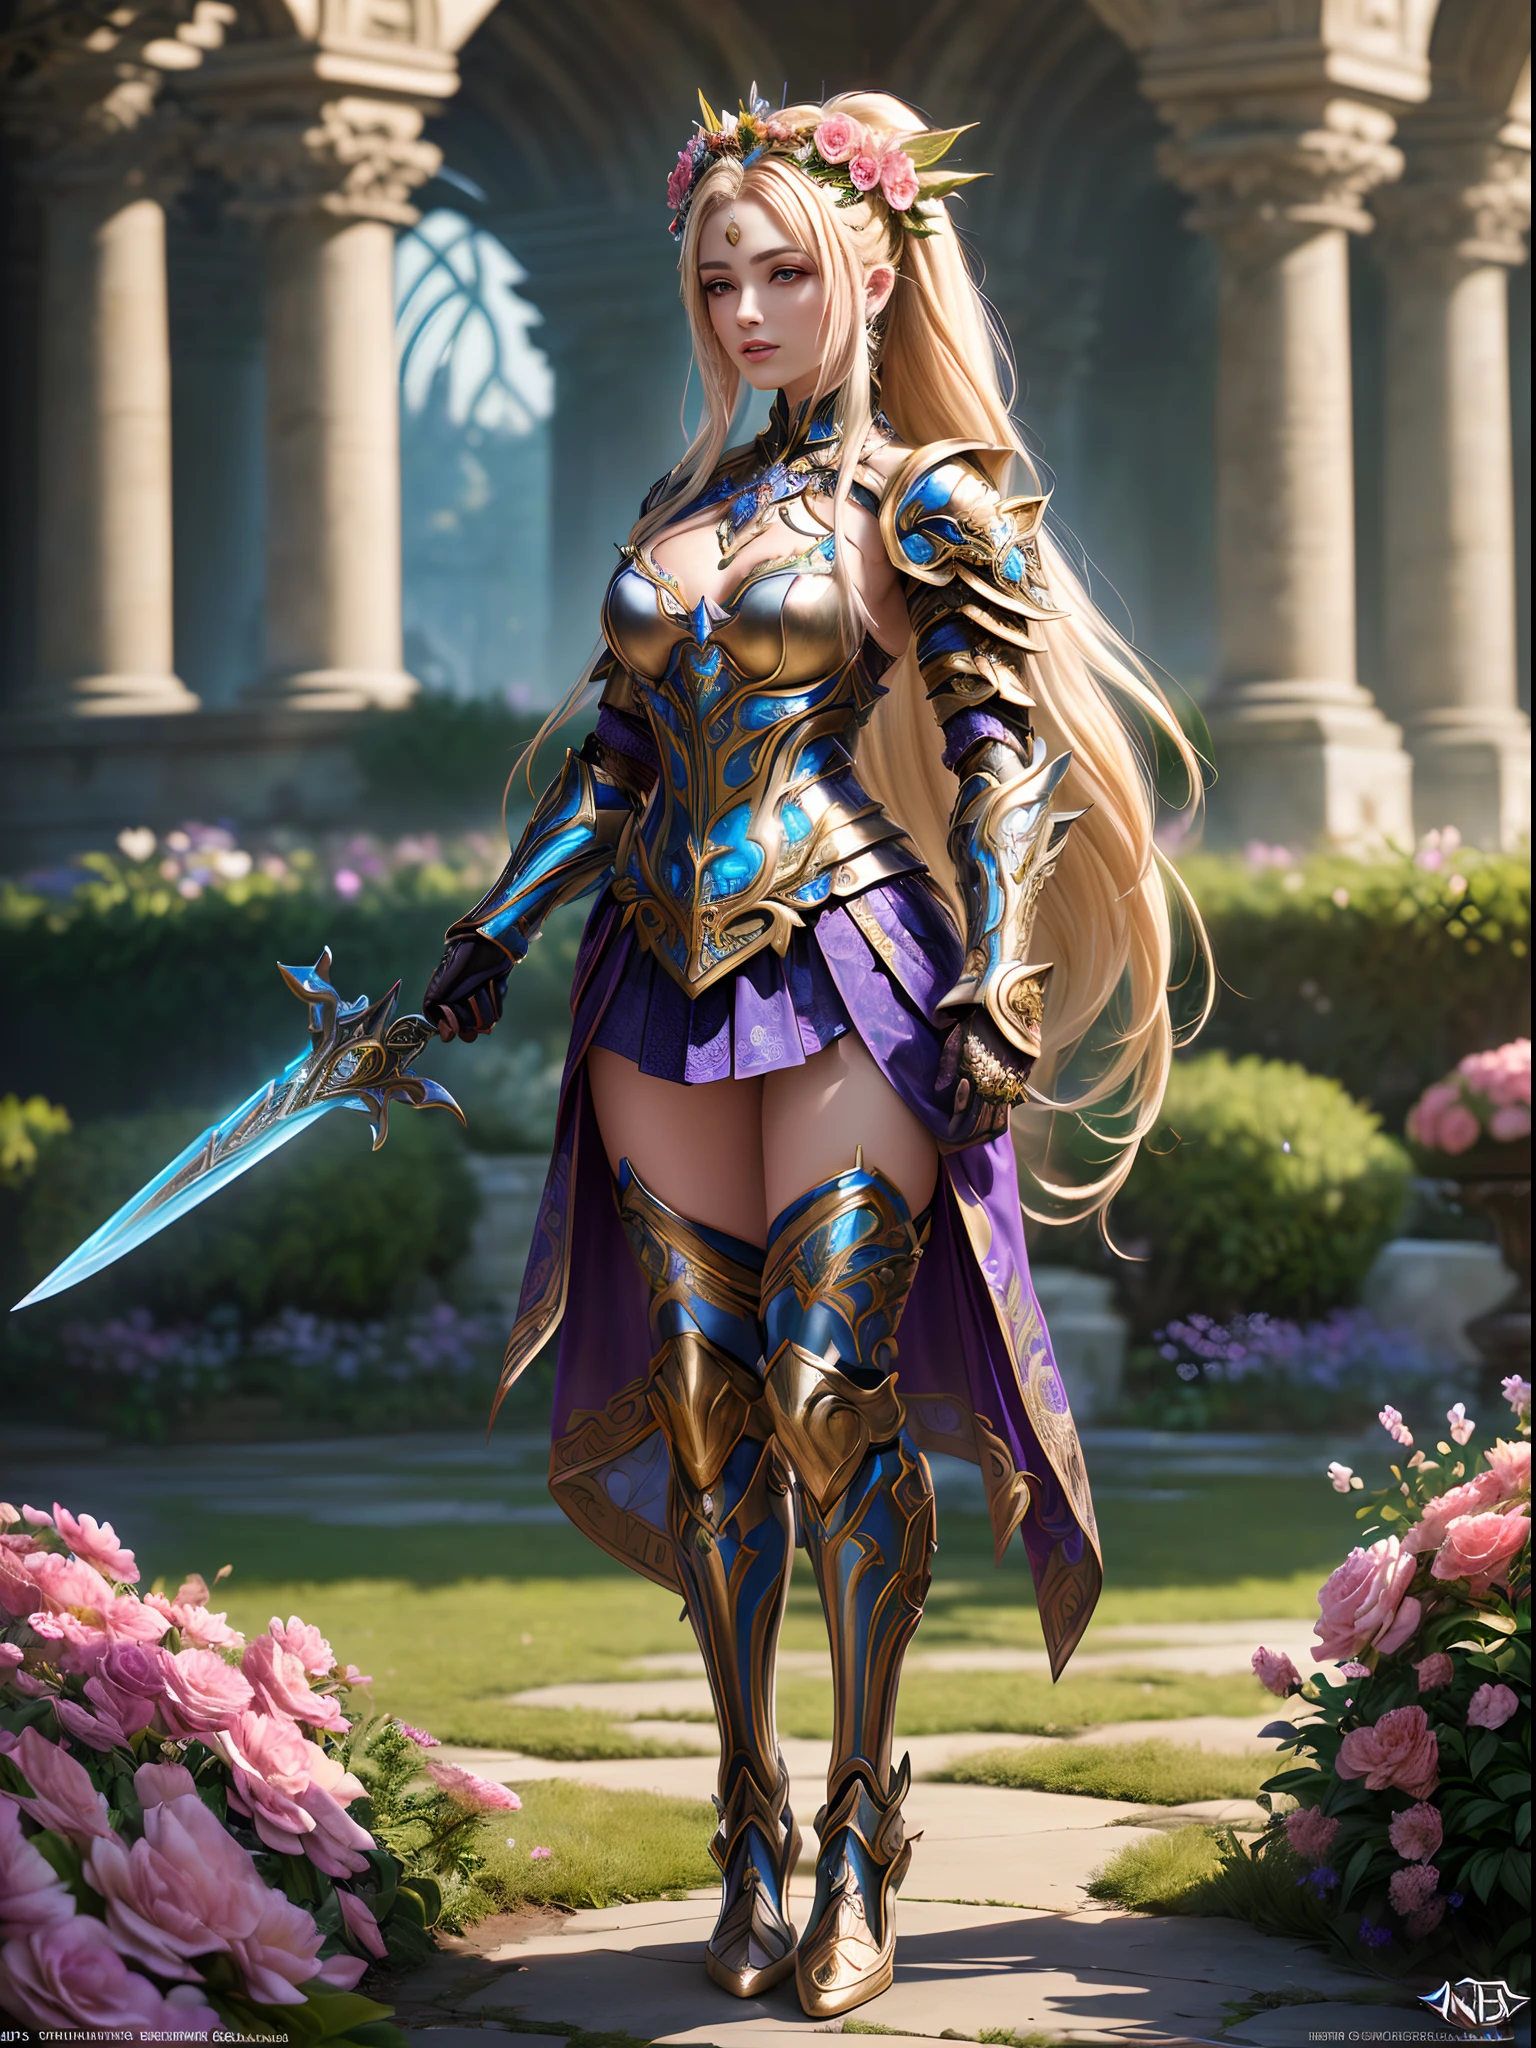 (全身影像) 一位戰士仙女，長著飄逸的金髮，花香濃鬱+金屬鎧甲, 面向前, 站在花朵盛開的花園裡, 她拿著一把劍, 華麗的角色扮演, 善良的機器人女孩與鮮花, 複雜的服裝設計, 超精细的幻想人物, 華麗的盔甲, (((穿著 "拼裝鎧甲"))), 漂亮的盔甲, 令人驚嘆的盔甲, 🌺, 虚幻引擎渲染 + a 女神, 賽博朋克花朋克, 女神. 极高的细节, extremely detailed 女神 shot